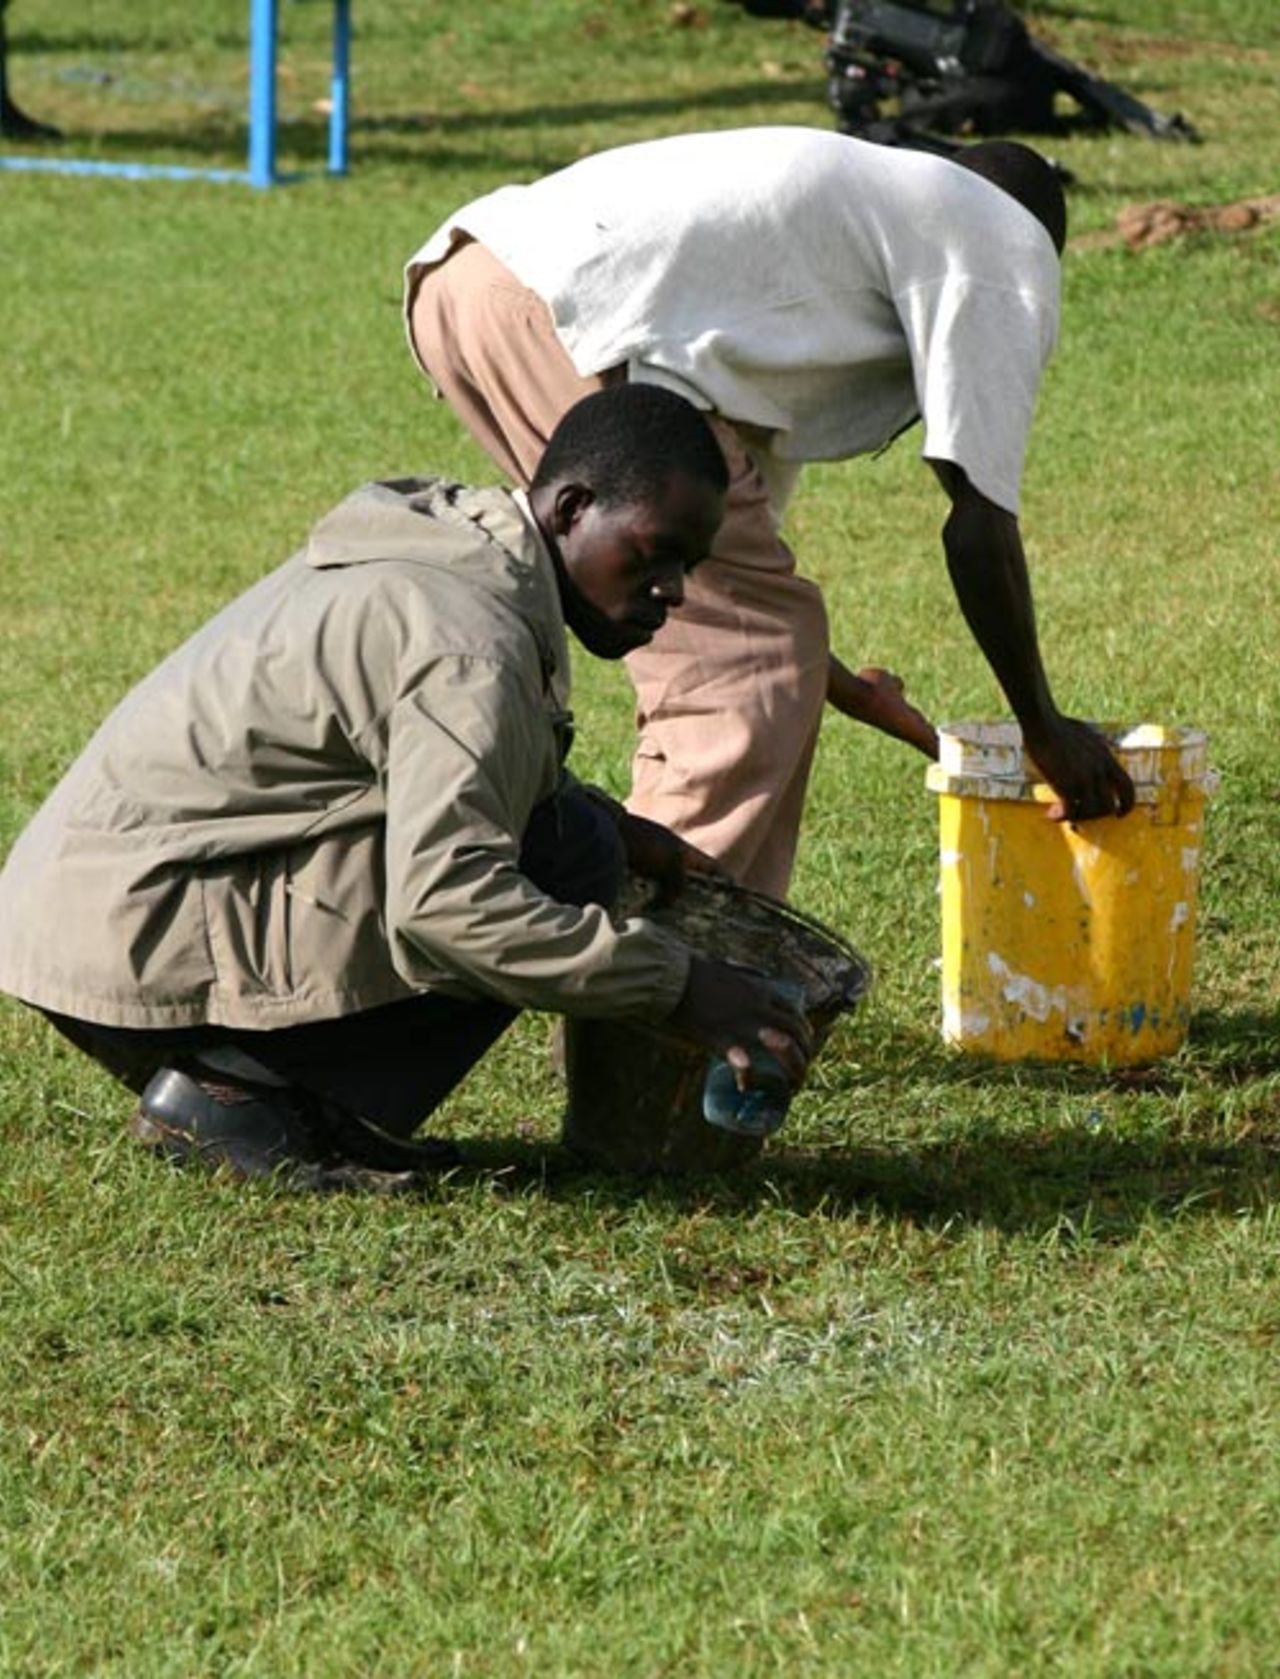 Groundsmen lift water from the outfield after heavy rain hit Nairobi, Kenya v Ireland, World Cricket League, Ruaraka, February 2, 2007